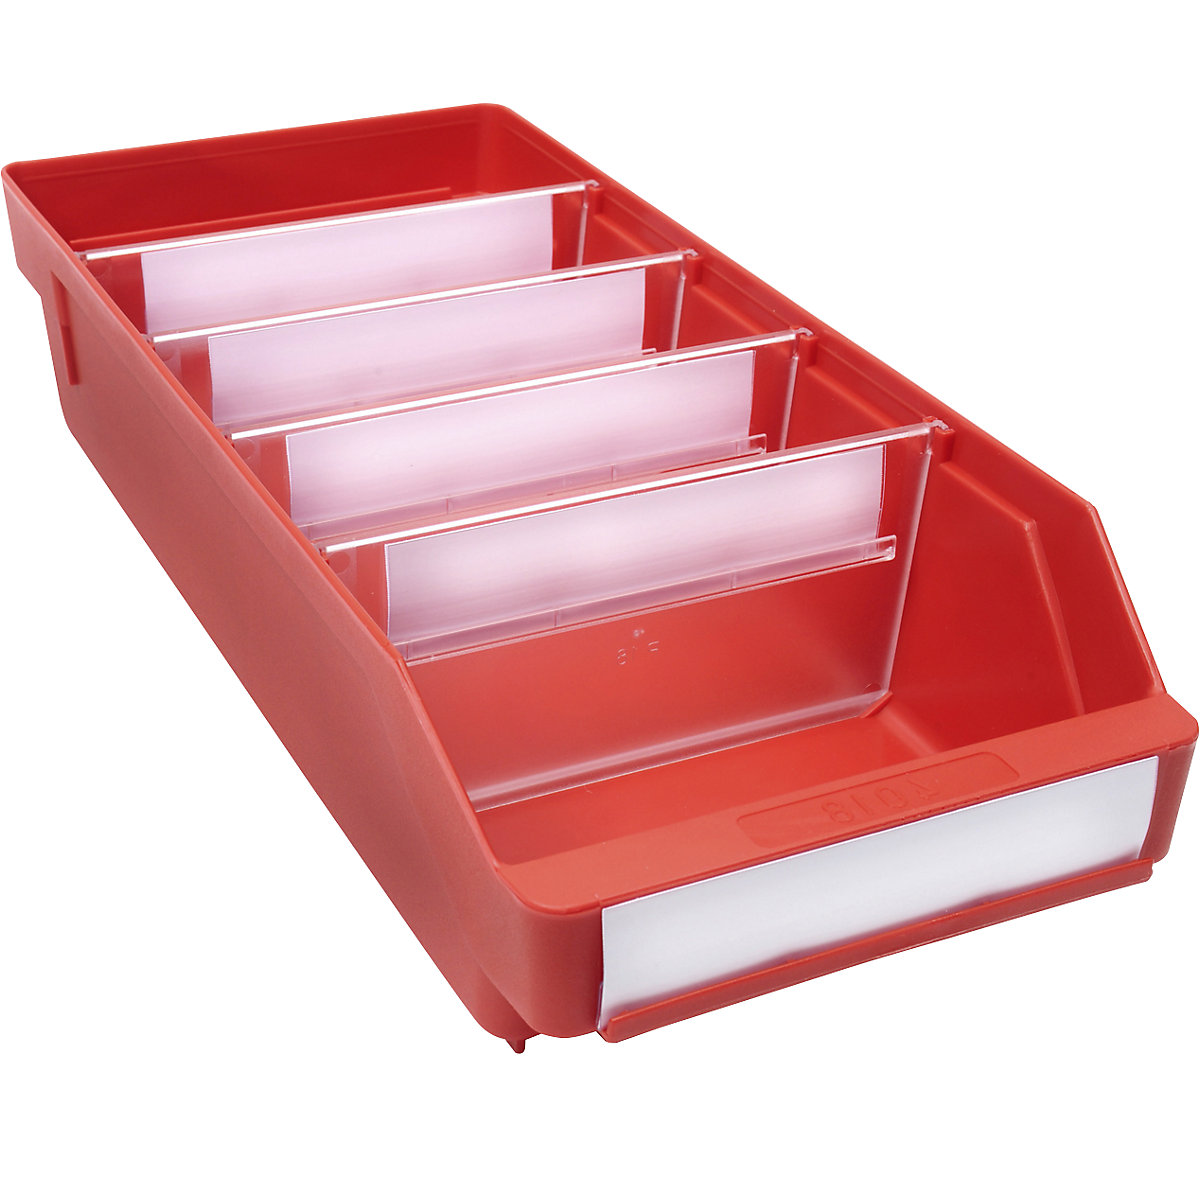 Regalkasten aus hochschlagfestem Polypropylen STEMO, rot, LxBxH 400 x 180 x 95 mm, VE 20 Stk-7